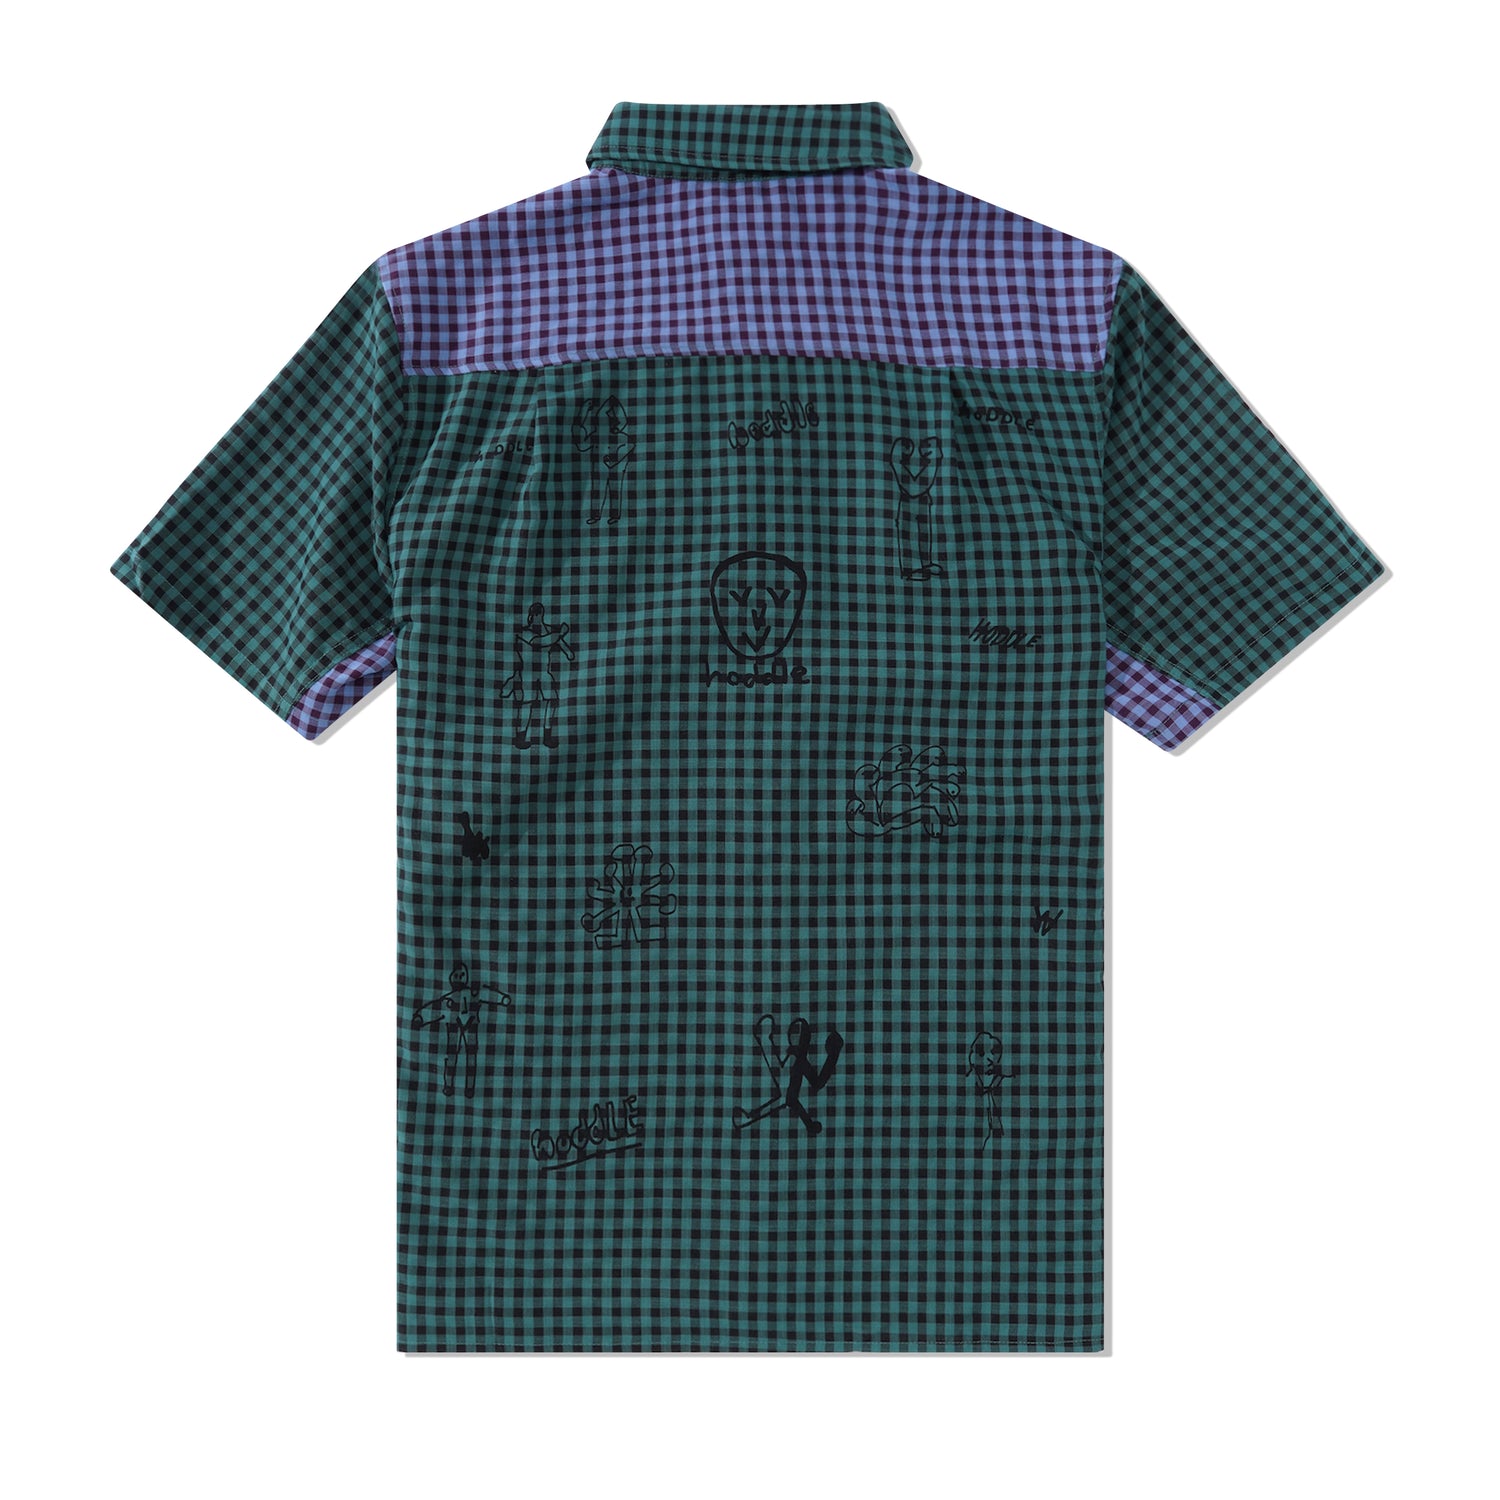 Tour S/S Shirt, Green / Blue